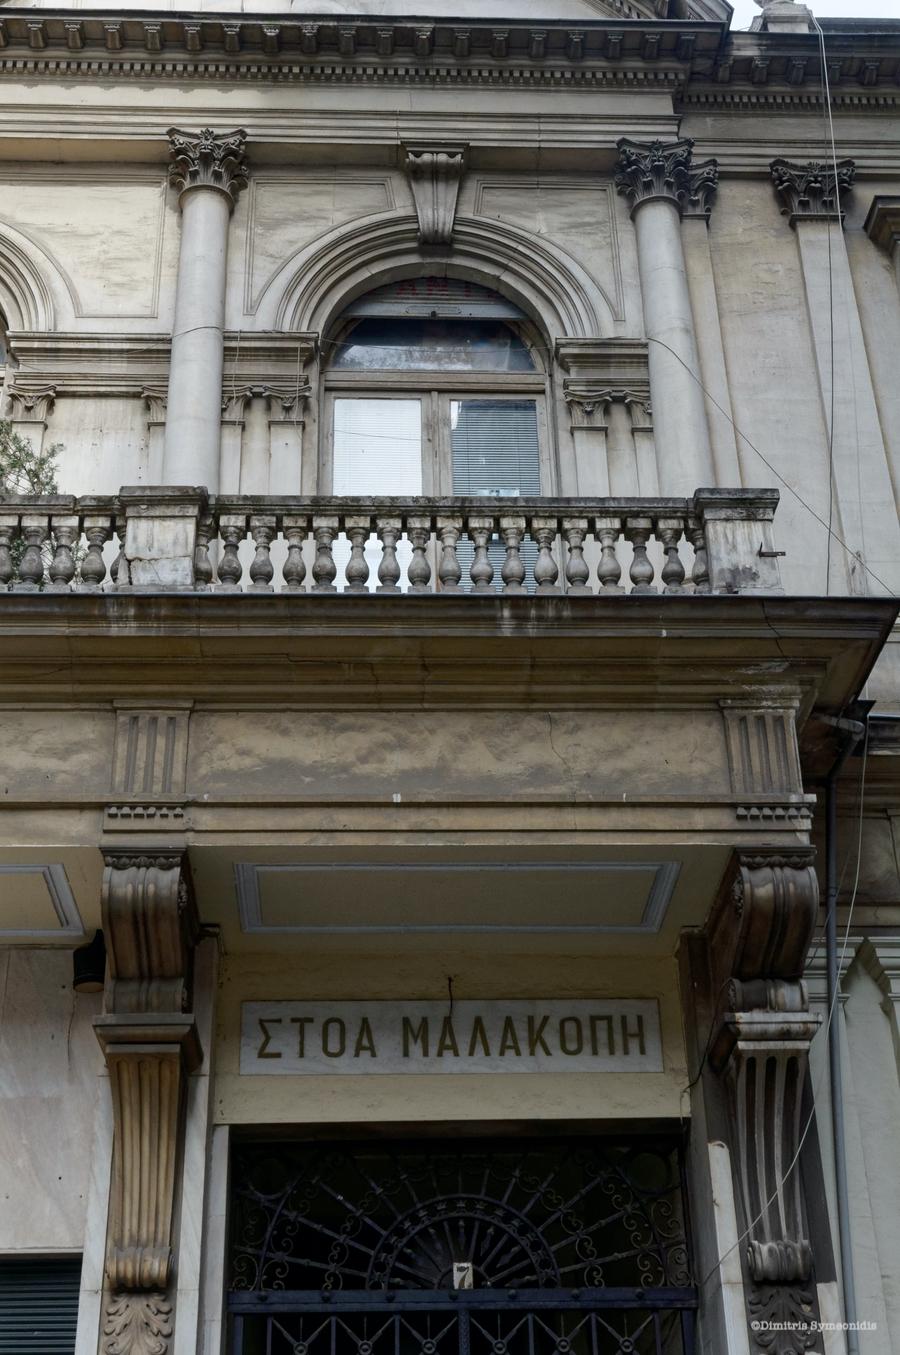 Στοά Μαλακοπή (Τράπεζα Θεσσαλονίκης), δημιούργημα του Vitaliano Poselli